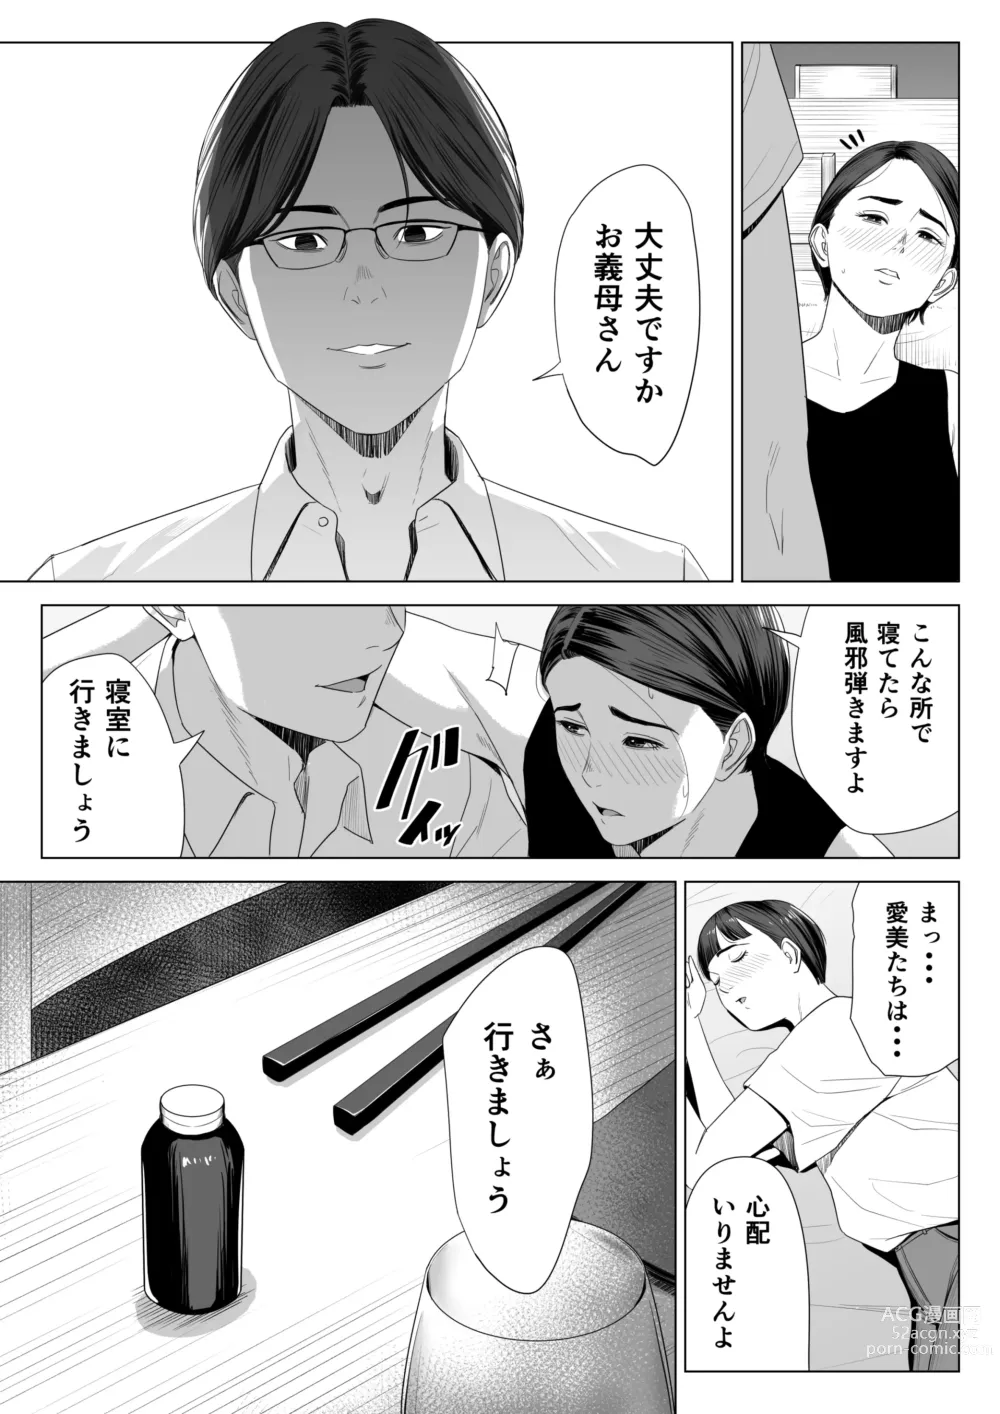 Page 10 of doujinshi Gibo no Tsukaeru Karada.